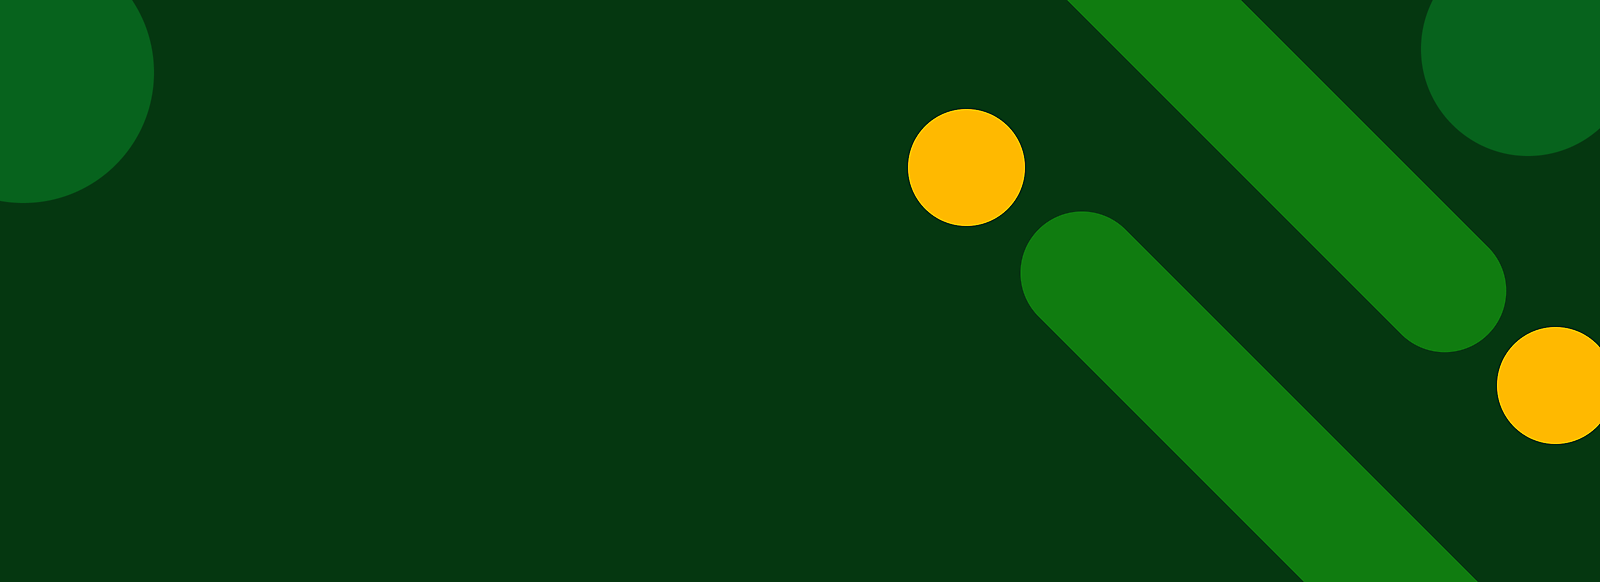 Sarı noktalar ve çapraz yeşil şeritler içeren soyut yeşil arka plan.